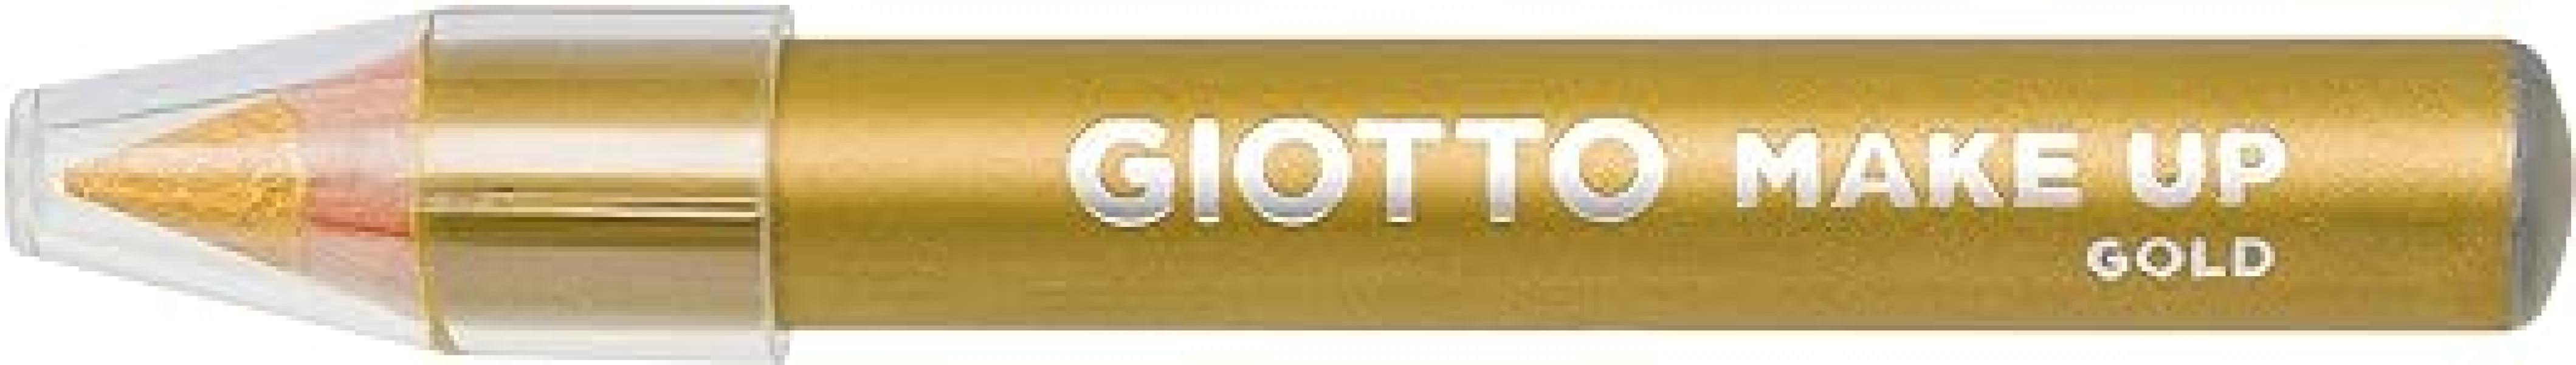 Matite cosmetiche Giotto make up metal confezione da 3